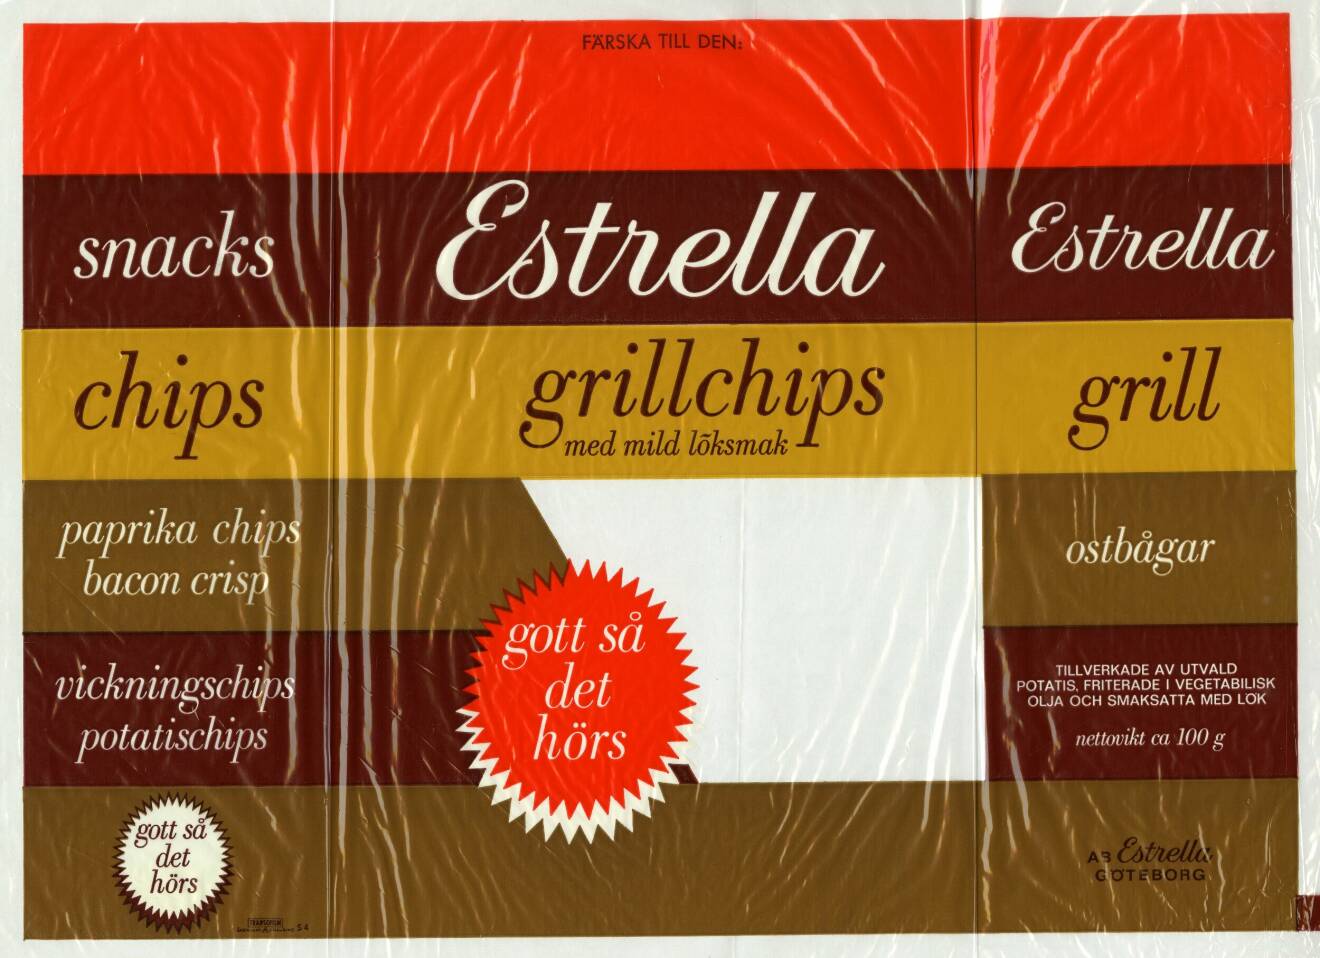 1967 introducerar Estrella grillchips